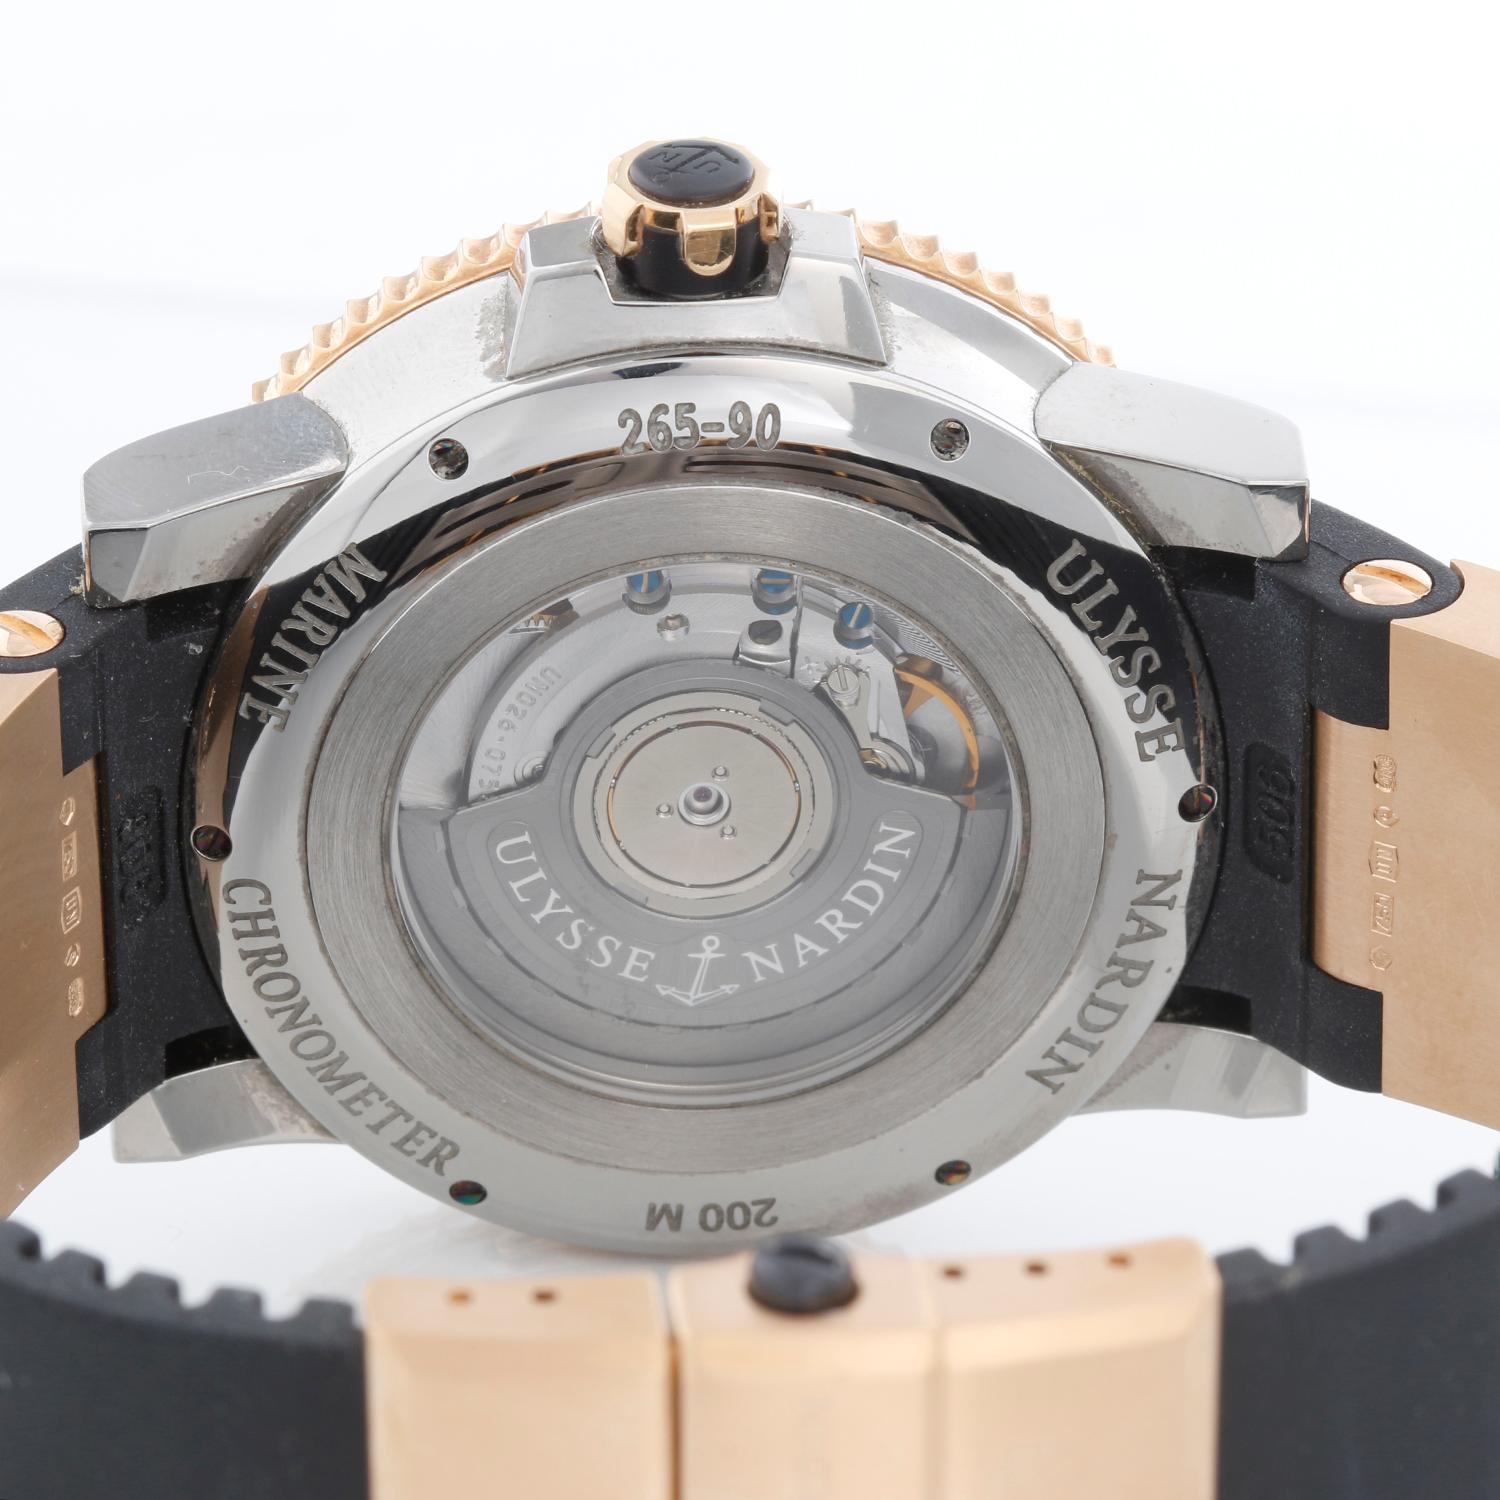 Ulysse Nardin Maxi Diver Steel & Rose Gold Men's Watch 265-90 1